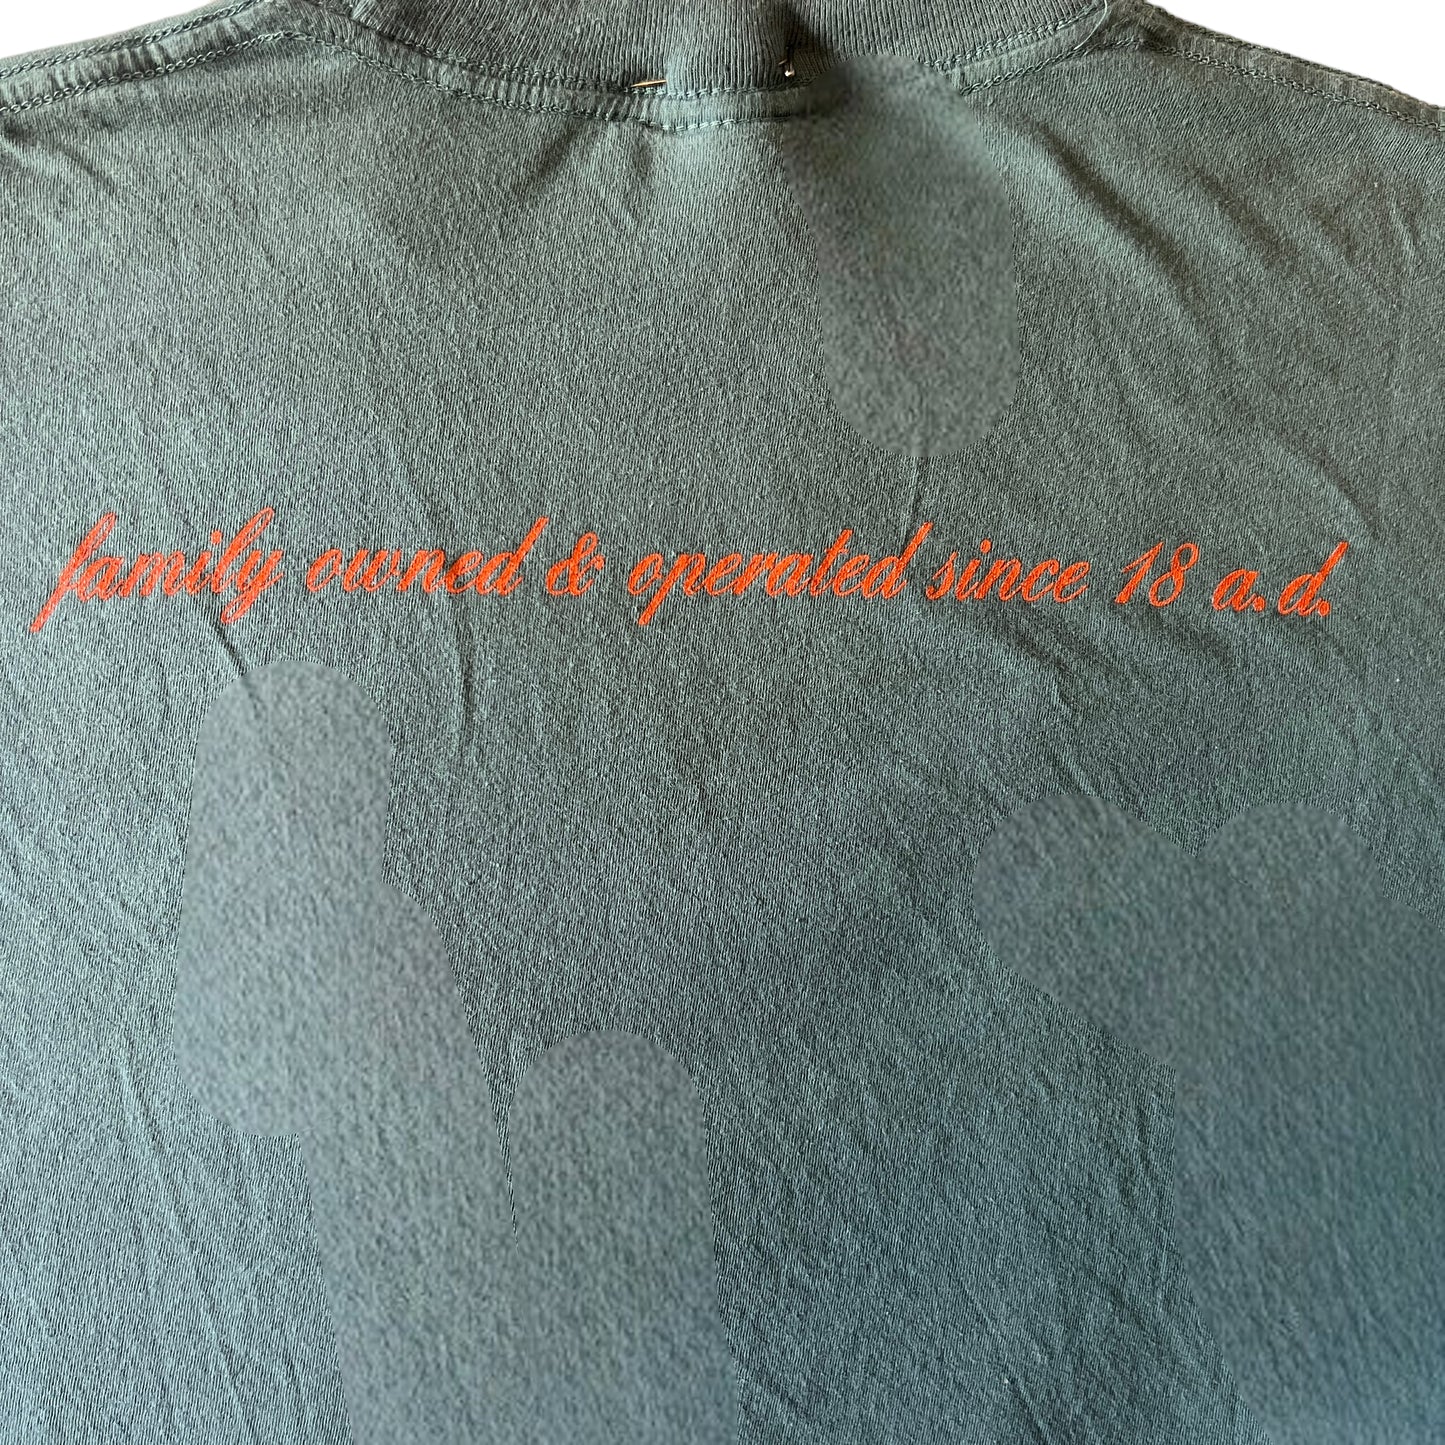 Queens Of The Stone Age 1998 Tour Vintage T-Shirt Size L 18 A.D.